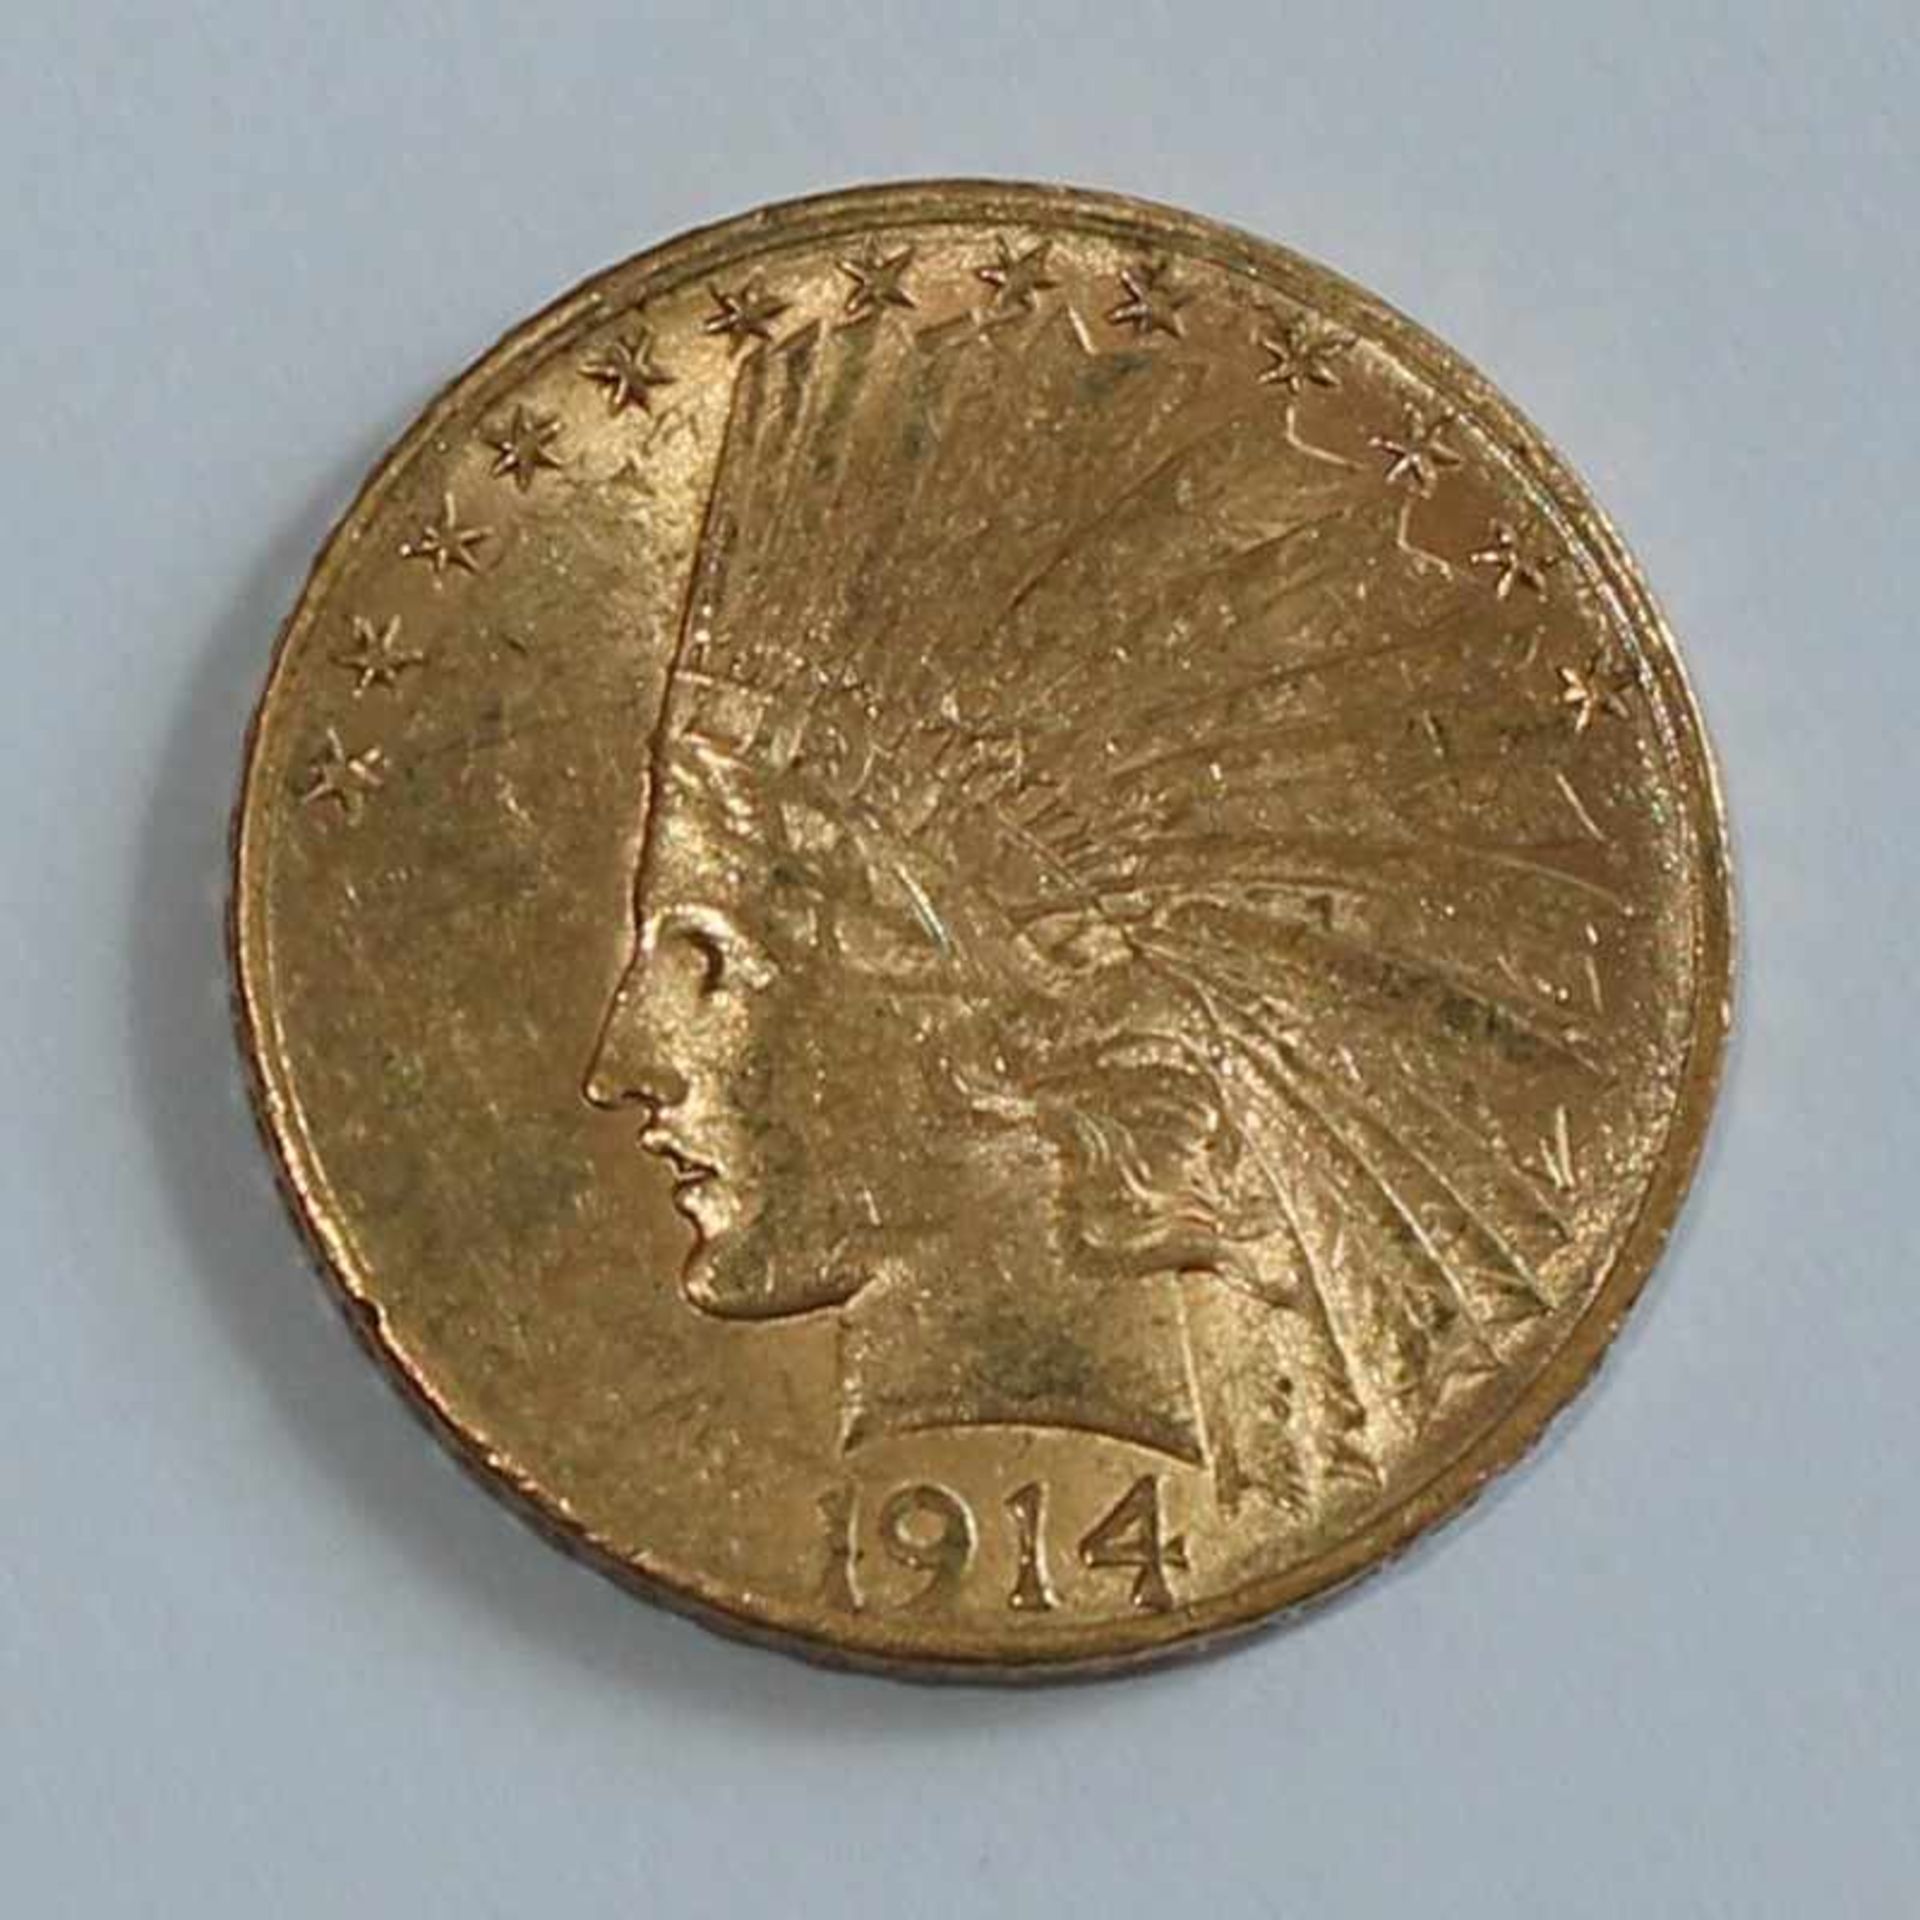 Gold USA - 10 Dollar 1914 Indian Head, D 27 mm, G 16,7g, vz